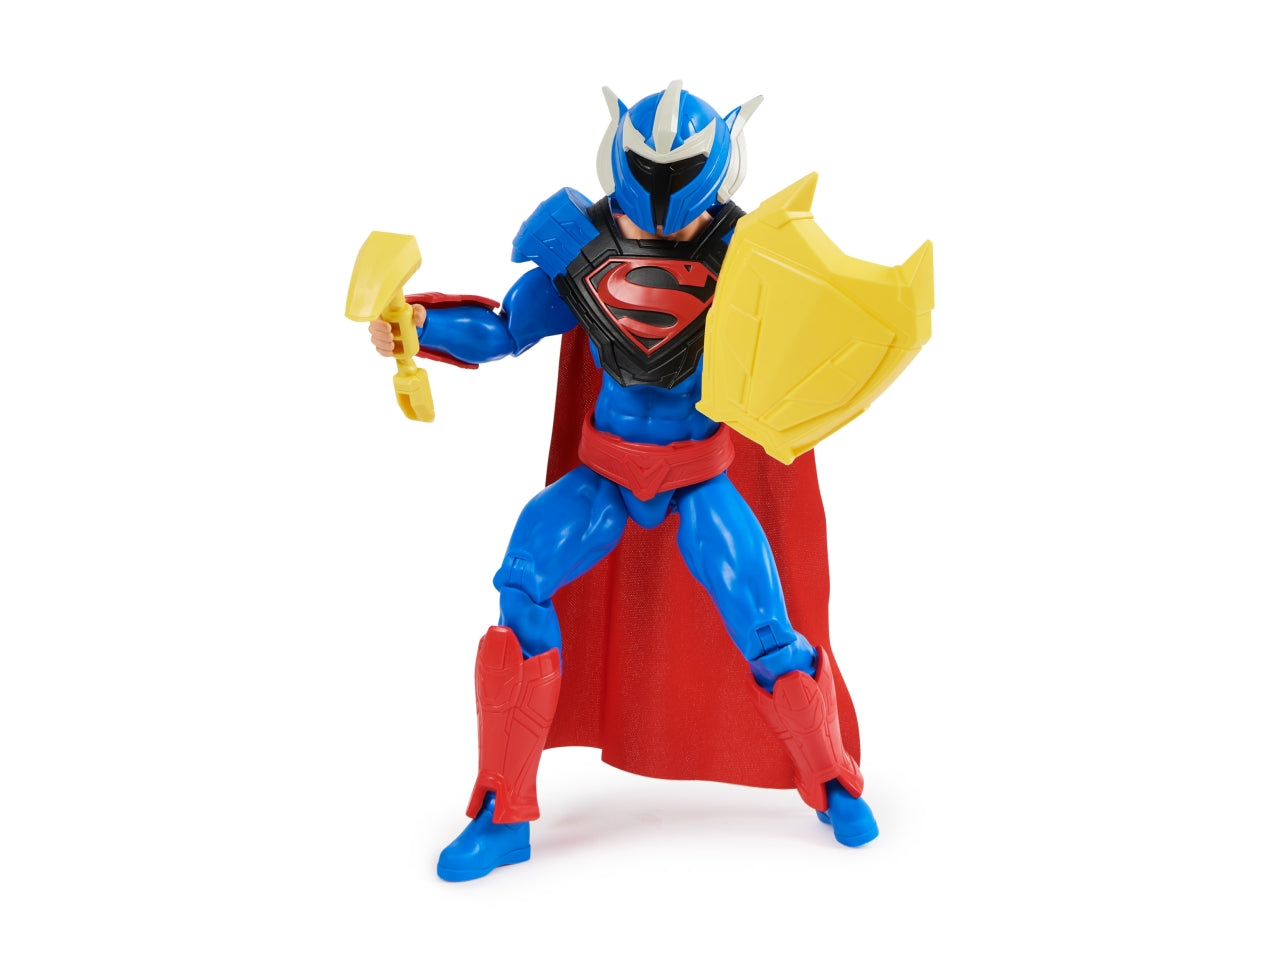 Dc universe personaggio superman adventures con accessori in scala